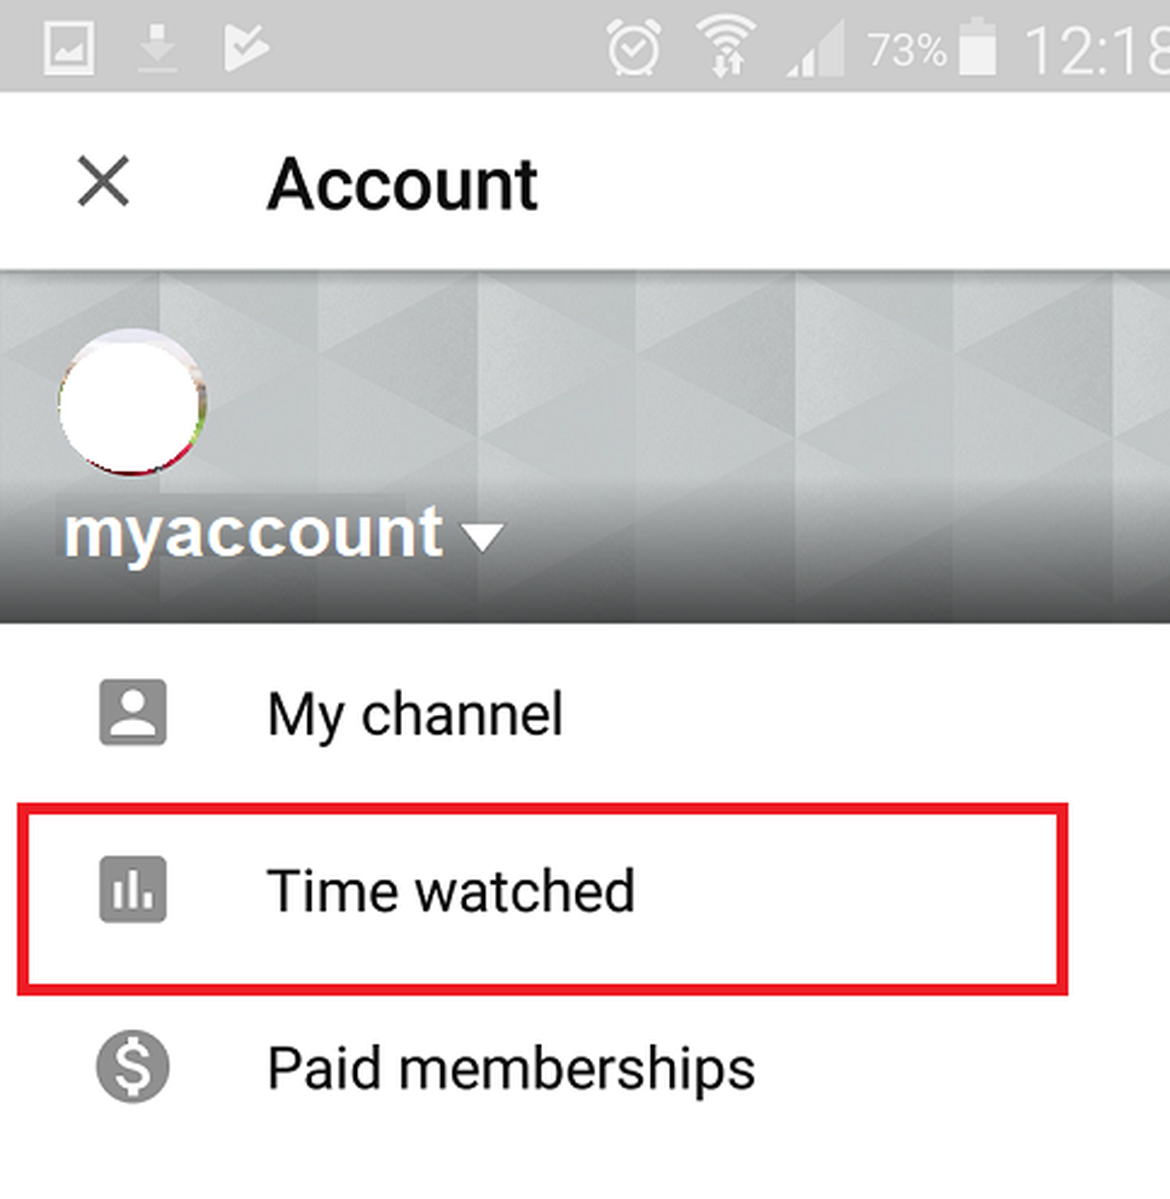 يوتيوب Youtube تقدم ميزة جديدة لمعرفة وإدارة الوقت الذي تقضيه بمشاهدة الفيديوهات